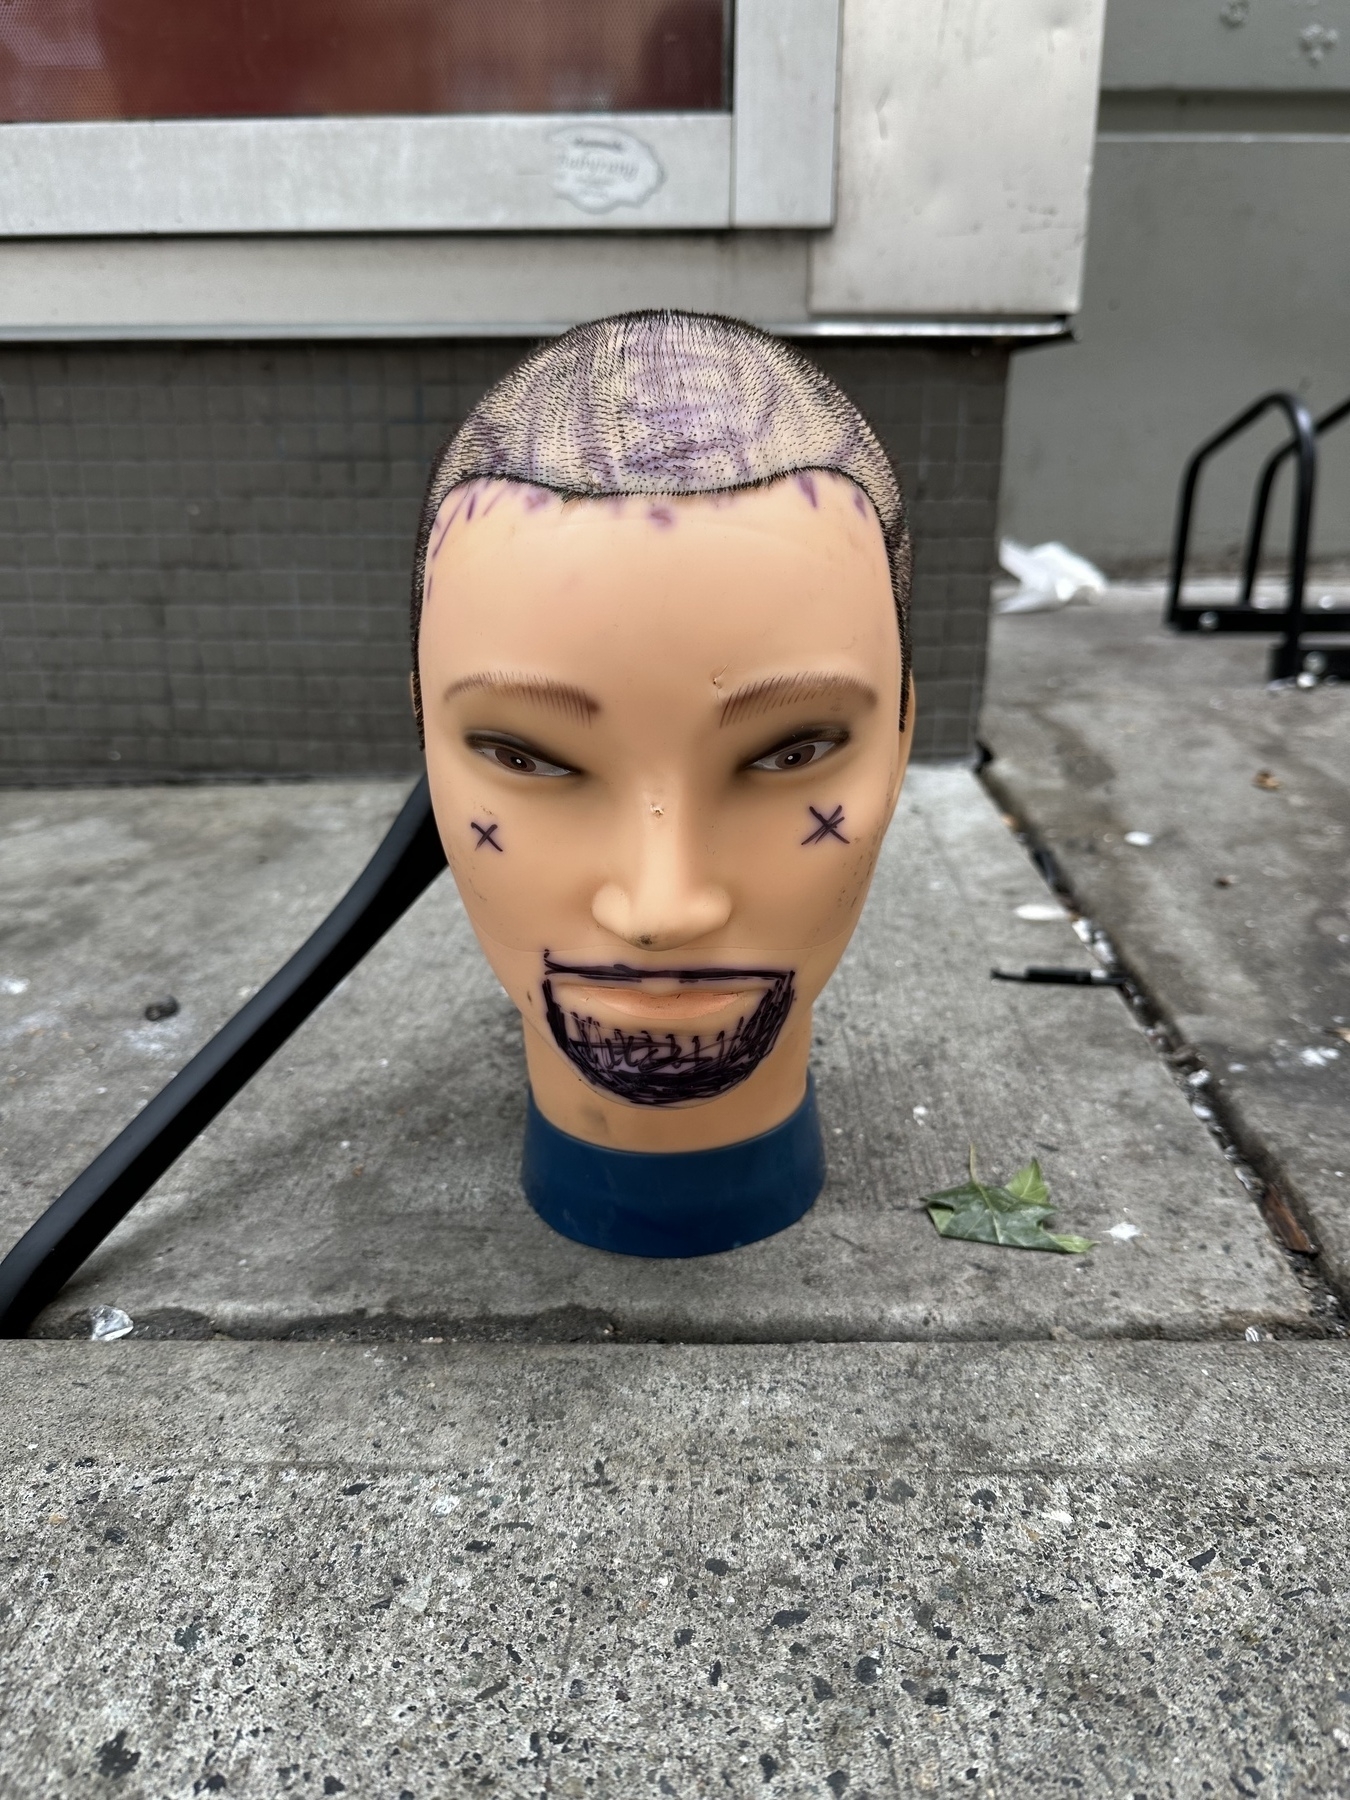 Random head on sidewalk.